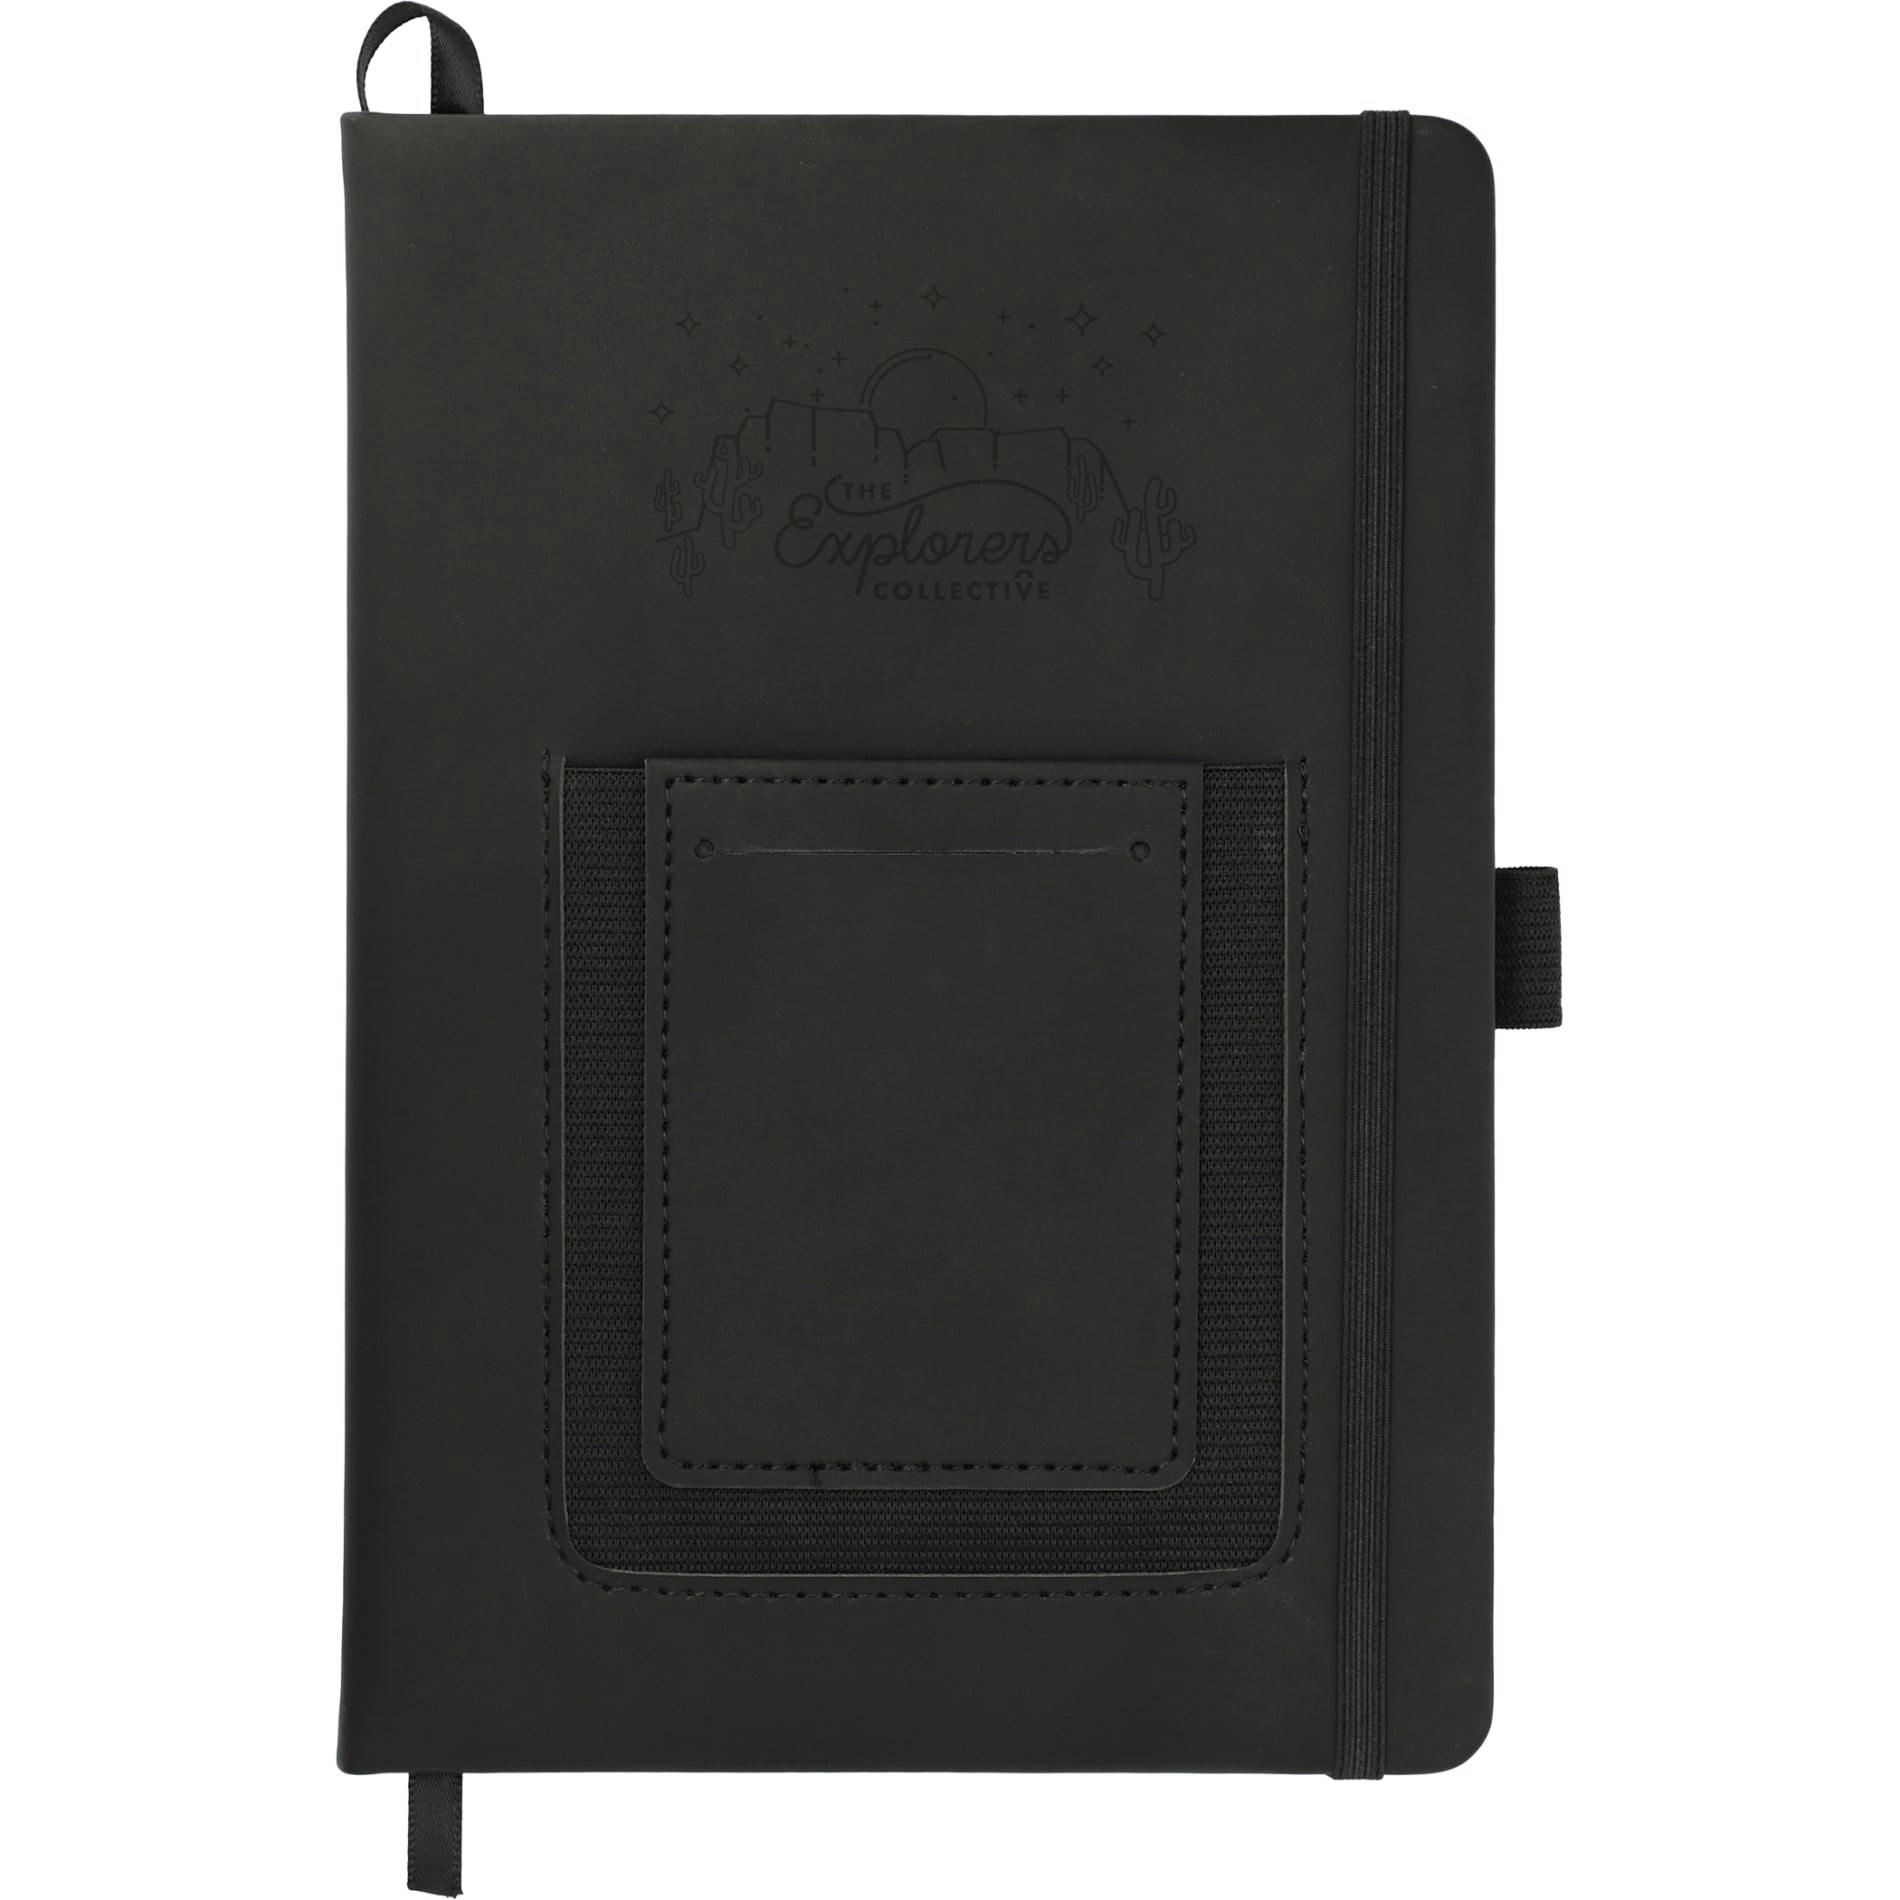 5.5" x 8.5" Vienna Phone Pocket Bound JournalBook® - additional Image 1